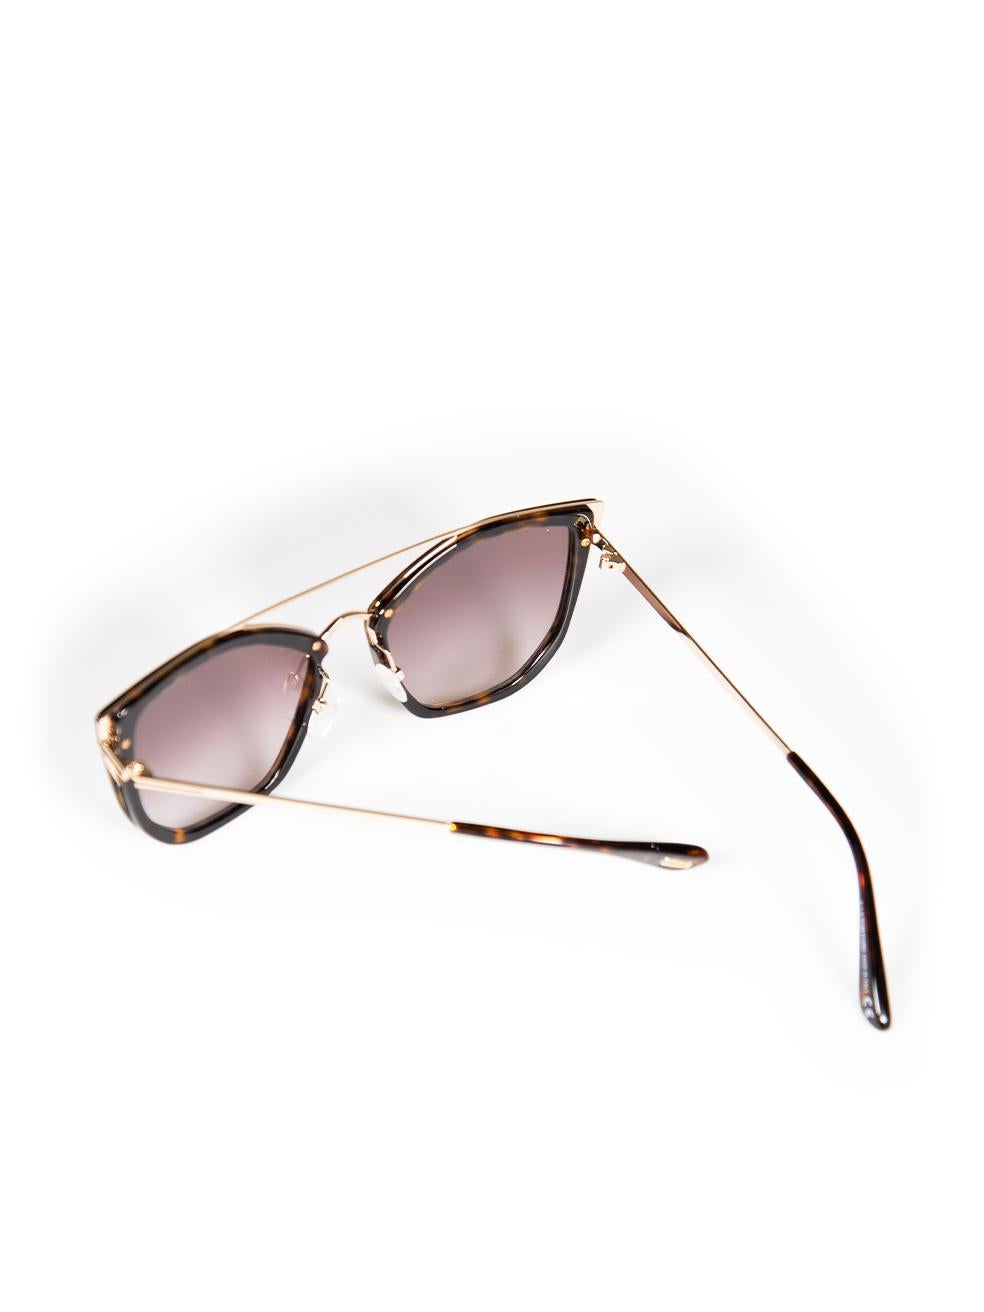 Tom Ford Dark Havana Cat Eye Sunglasses For Sale 3